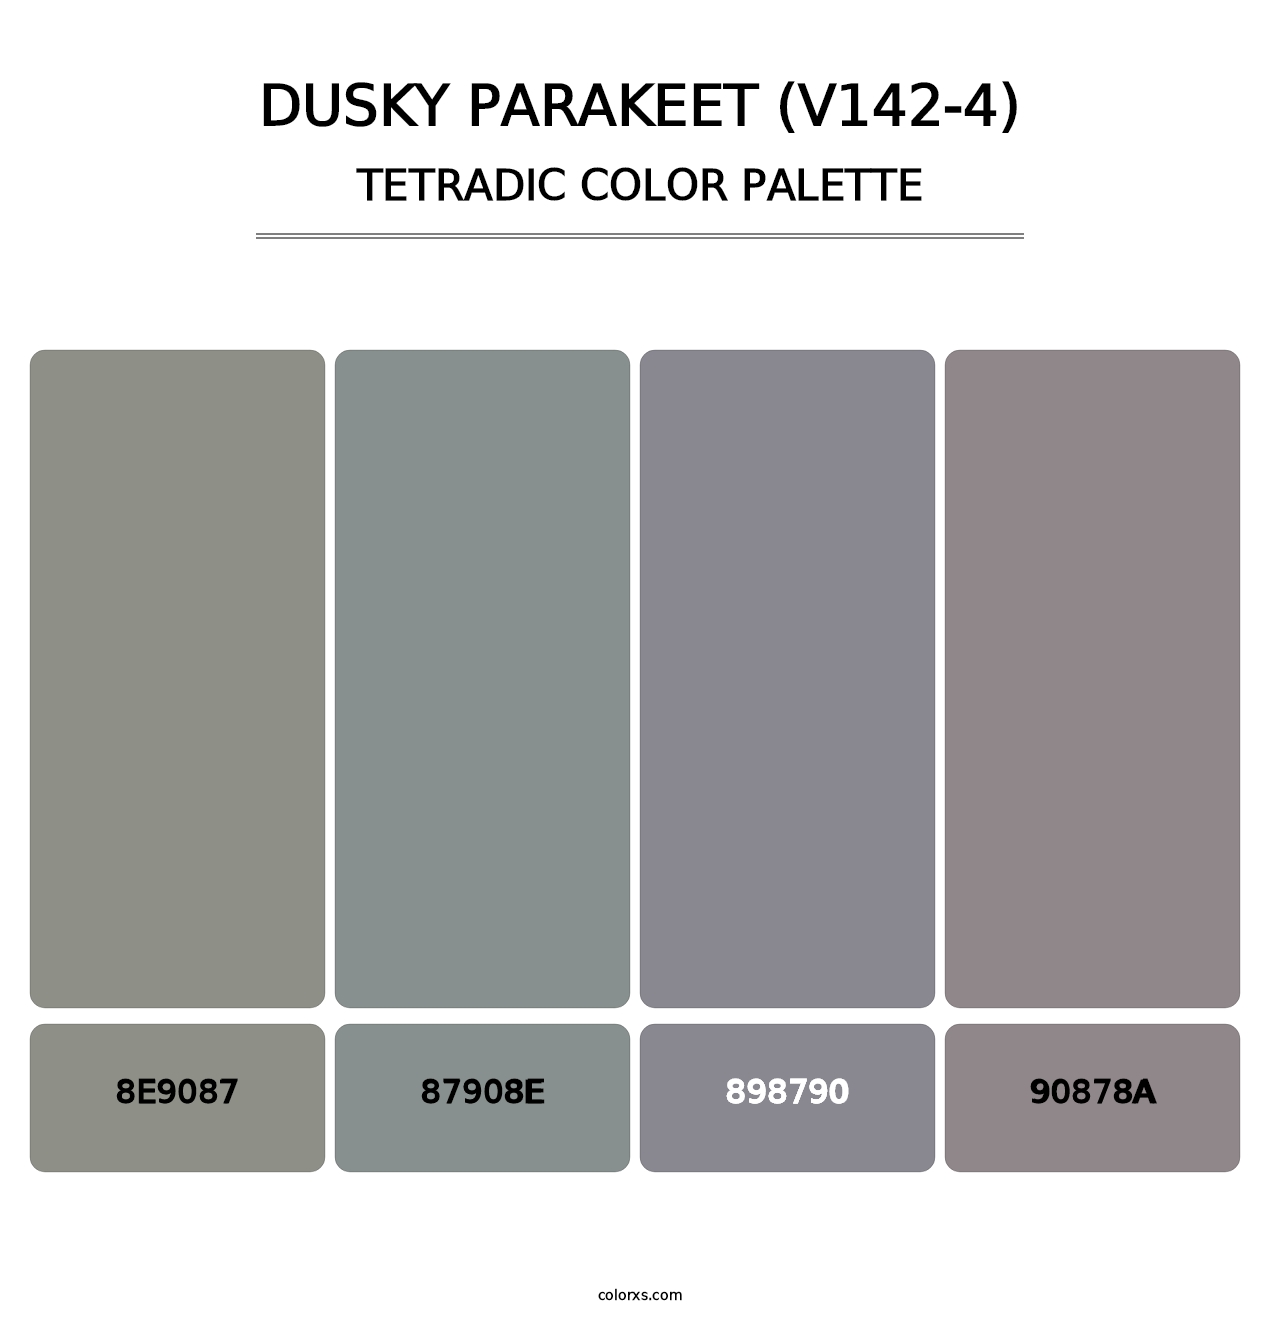 Dusky Parakeet (V142-4) - Tetradic Color Palette